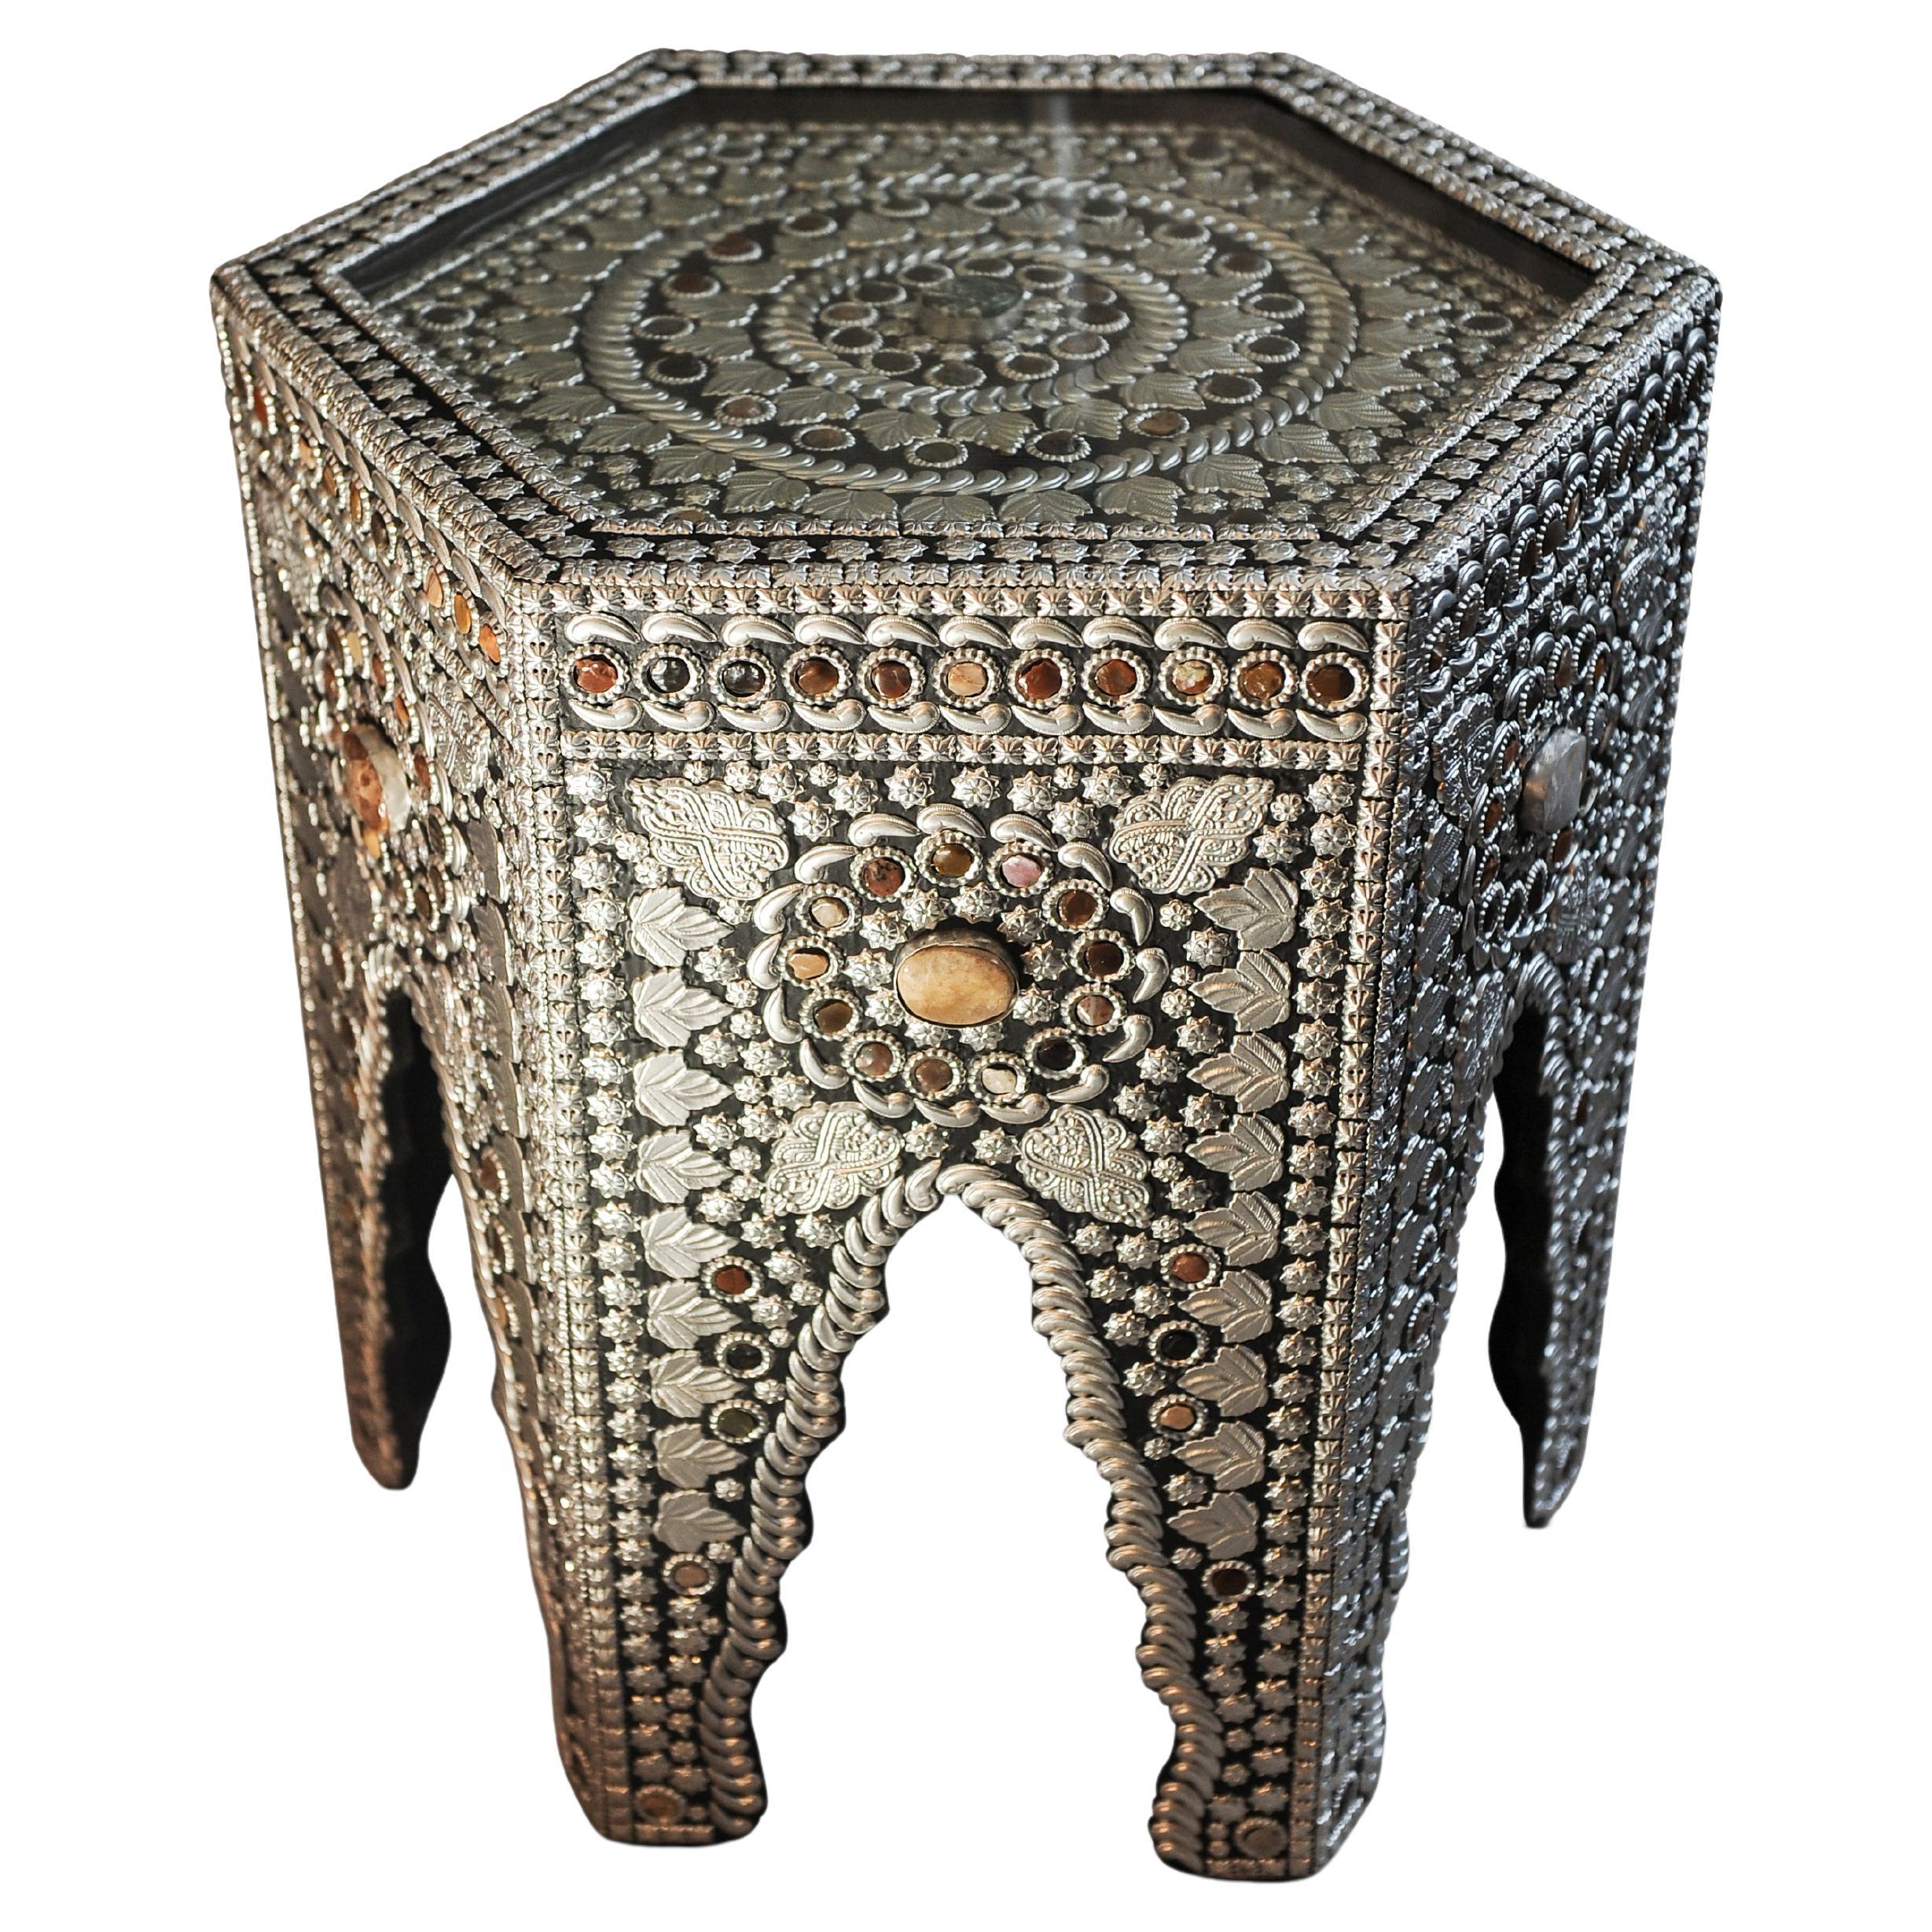 Table à thé hexagonale émaillée de conception mauresque avec des pierres semi-précieuses